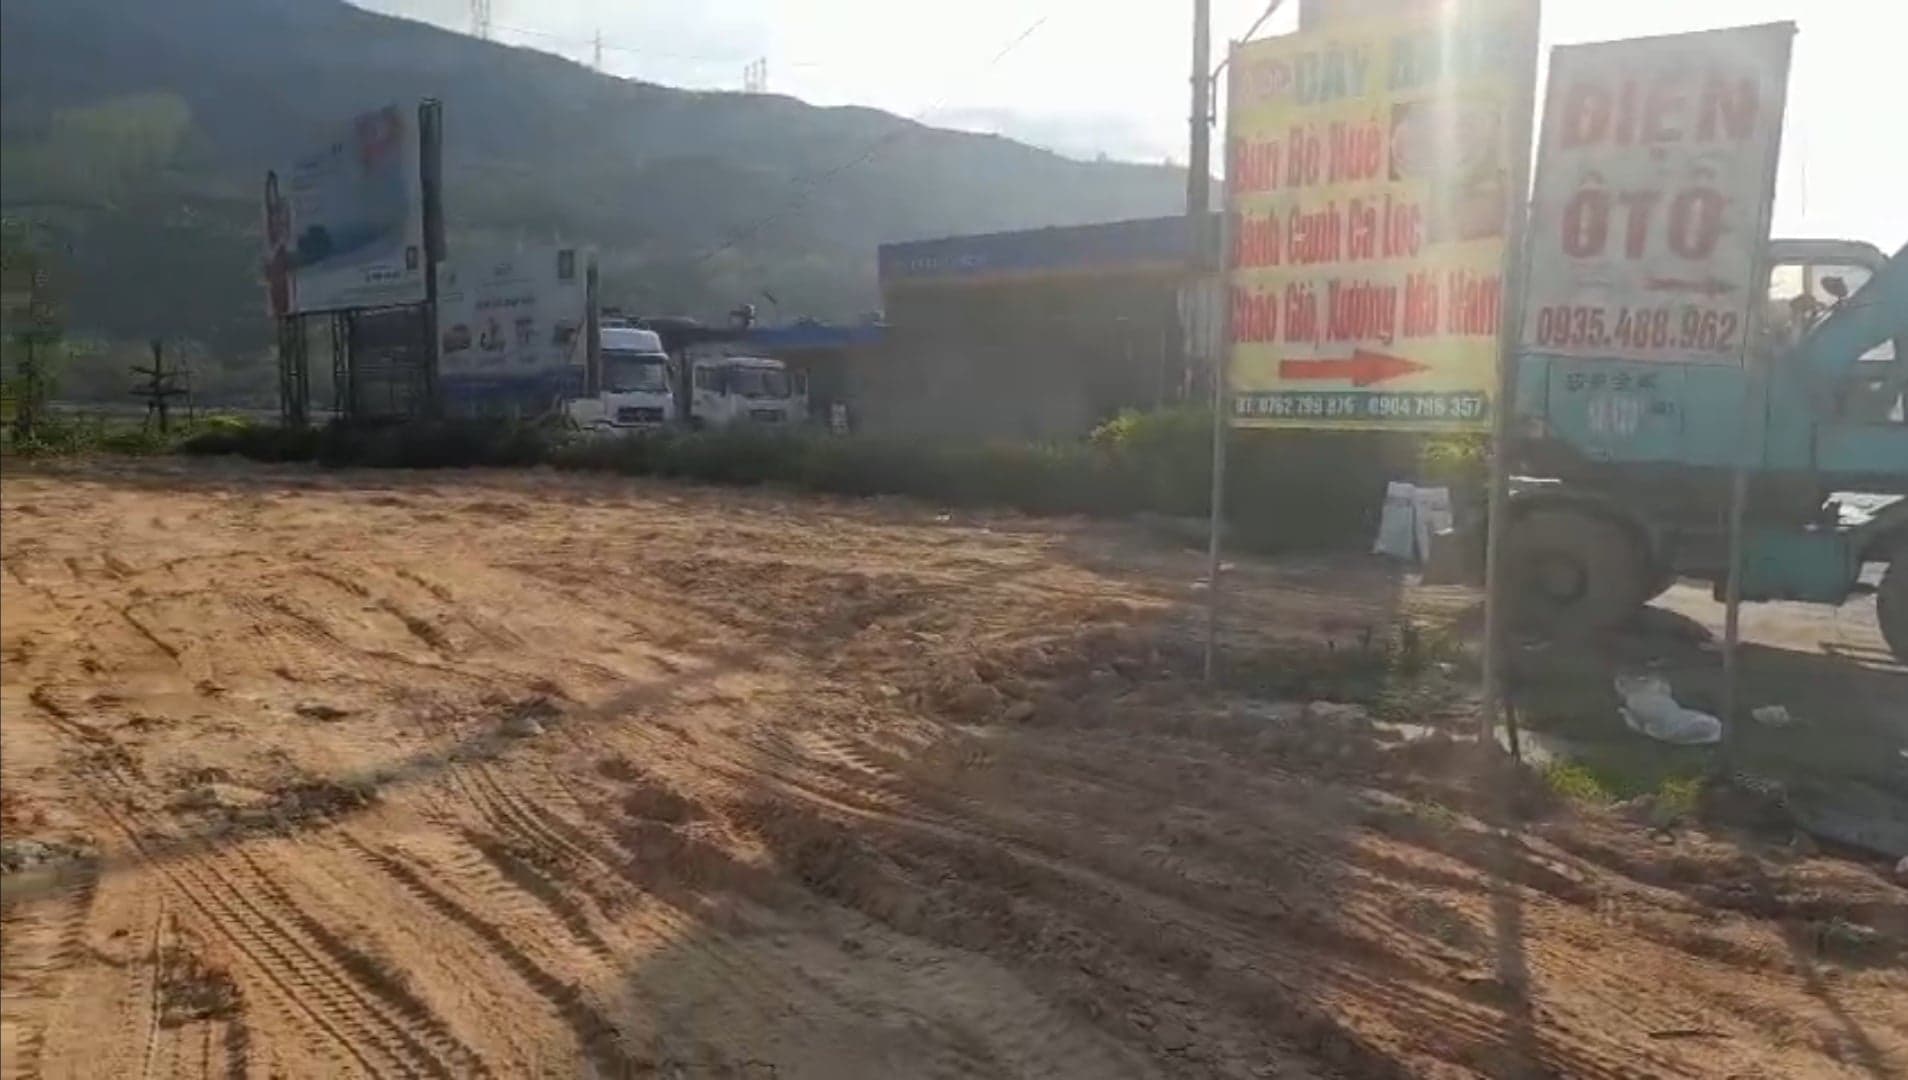 Khu đất trong hành lang an toàn giao thông đường bộ (đất do UBND xã Lộc Tiến quản lý) bị ông Nguyễn Xuân Hải tự ý san lấp bằng đất đá - ảnh: Người dân cung cấp.